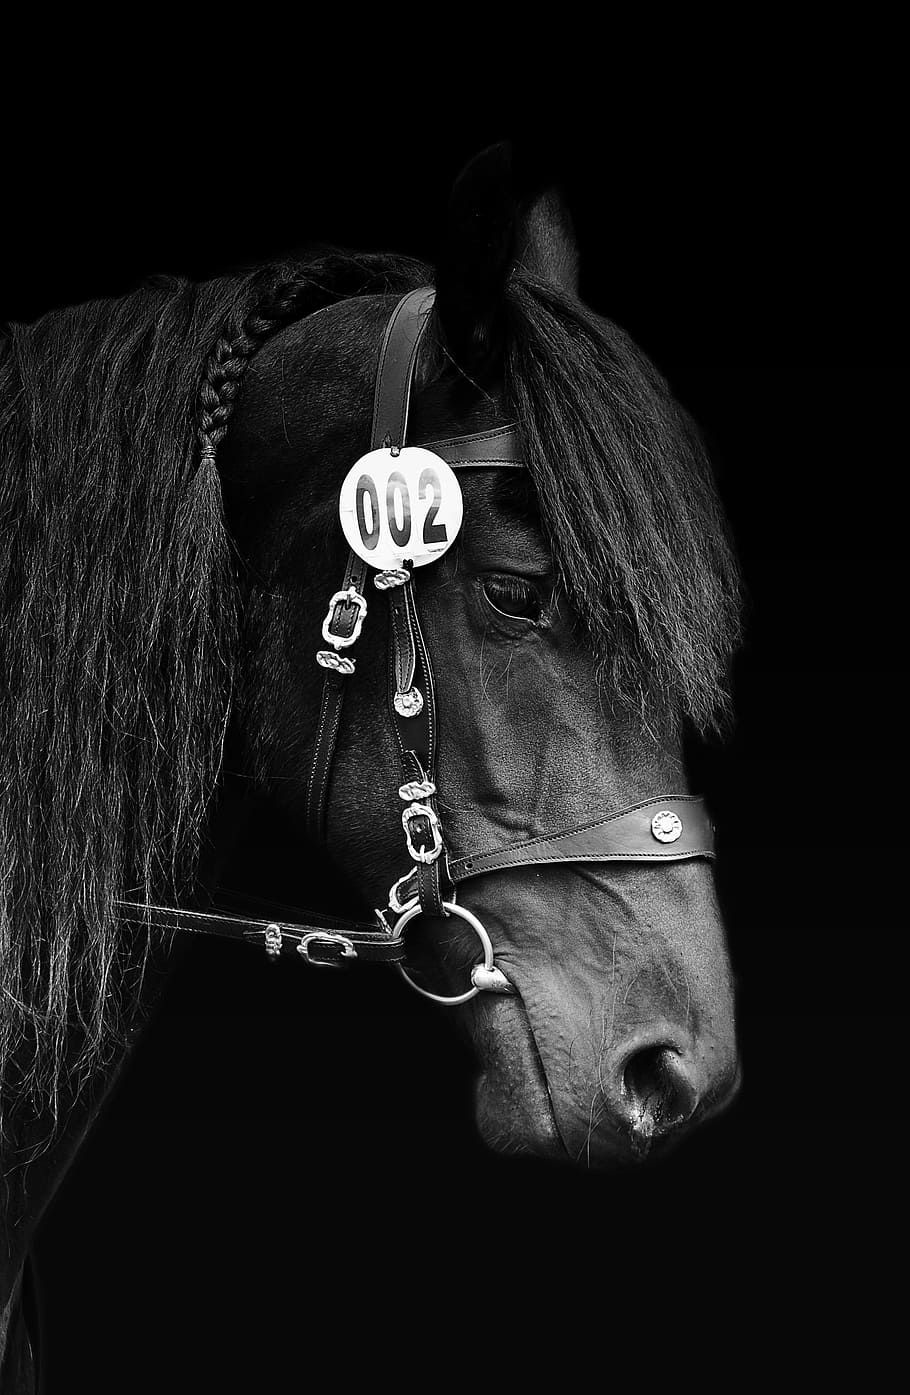 黒い馬の頭, 馬, 黒と白, 白, 黒, 動物, 馬の頭, ラップ, 黒白, 有蹄動物